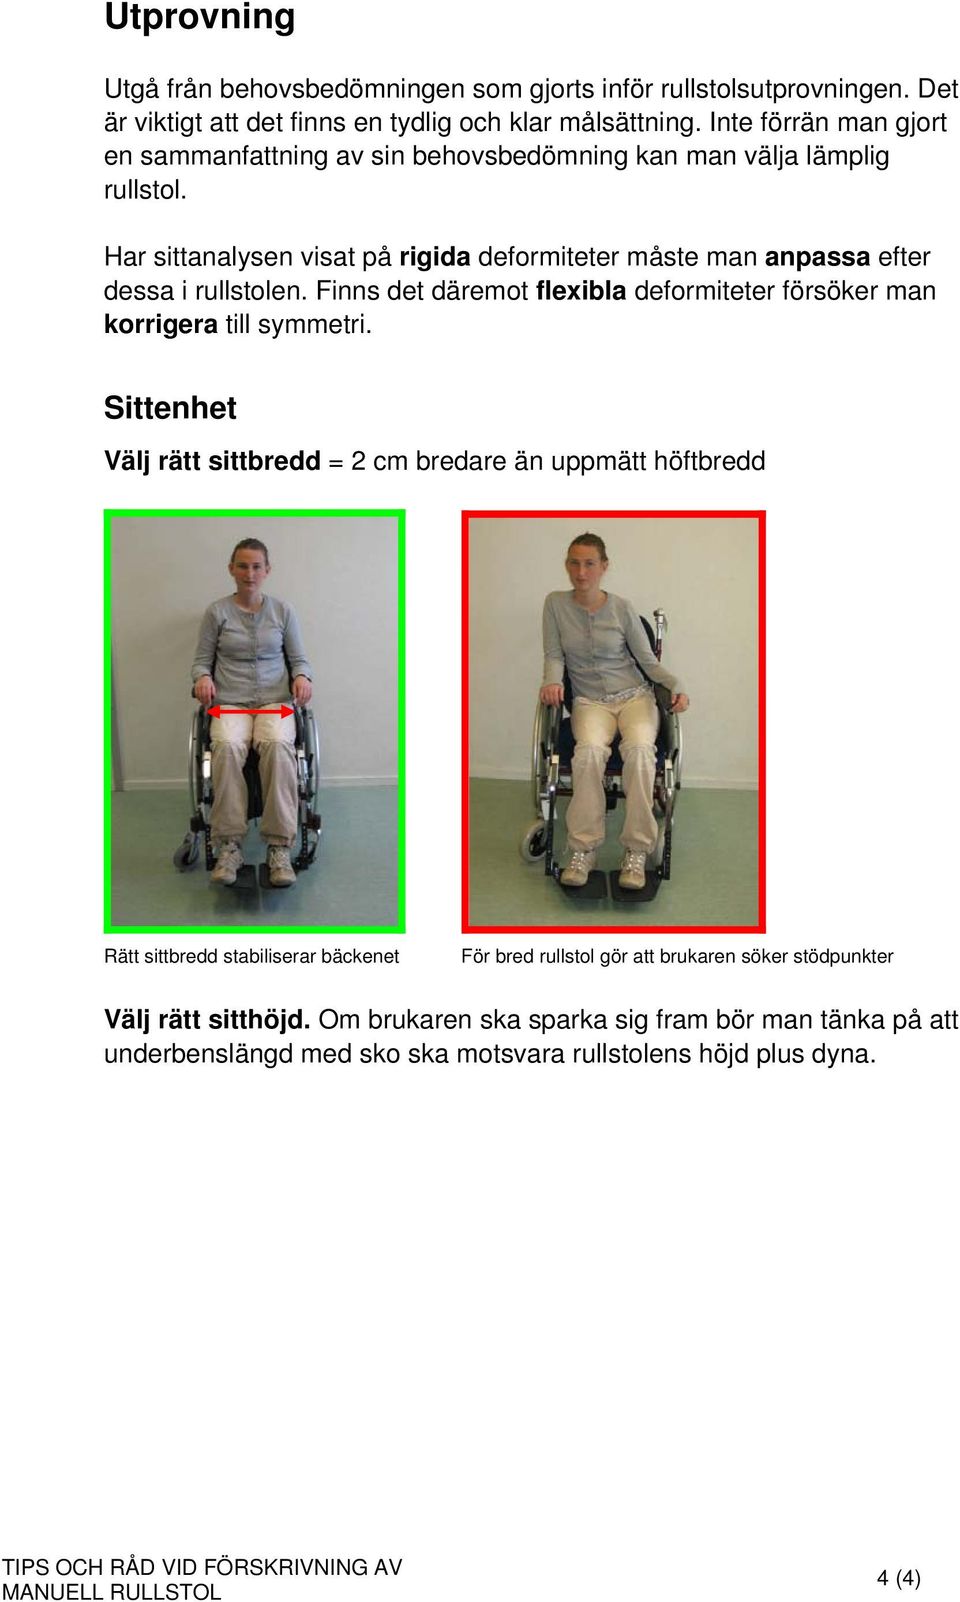 Har sittanalysen visat på rigida deformiteter måste man anpassa efter dessa i rullstolen. Finns det däremot flexibla deformiteter försöker man korrigera till symmetri.